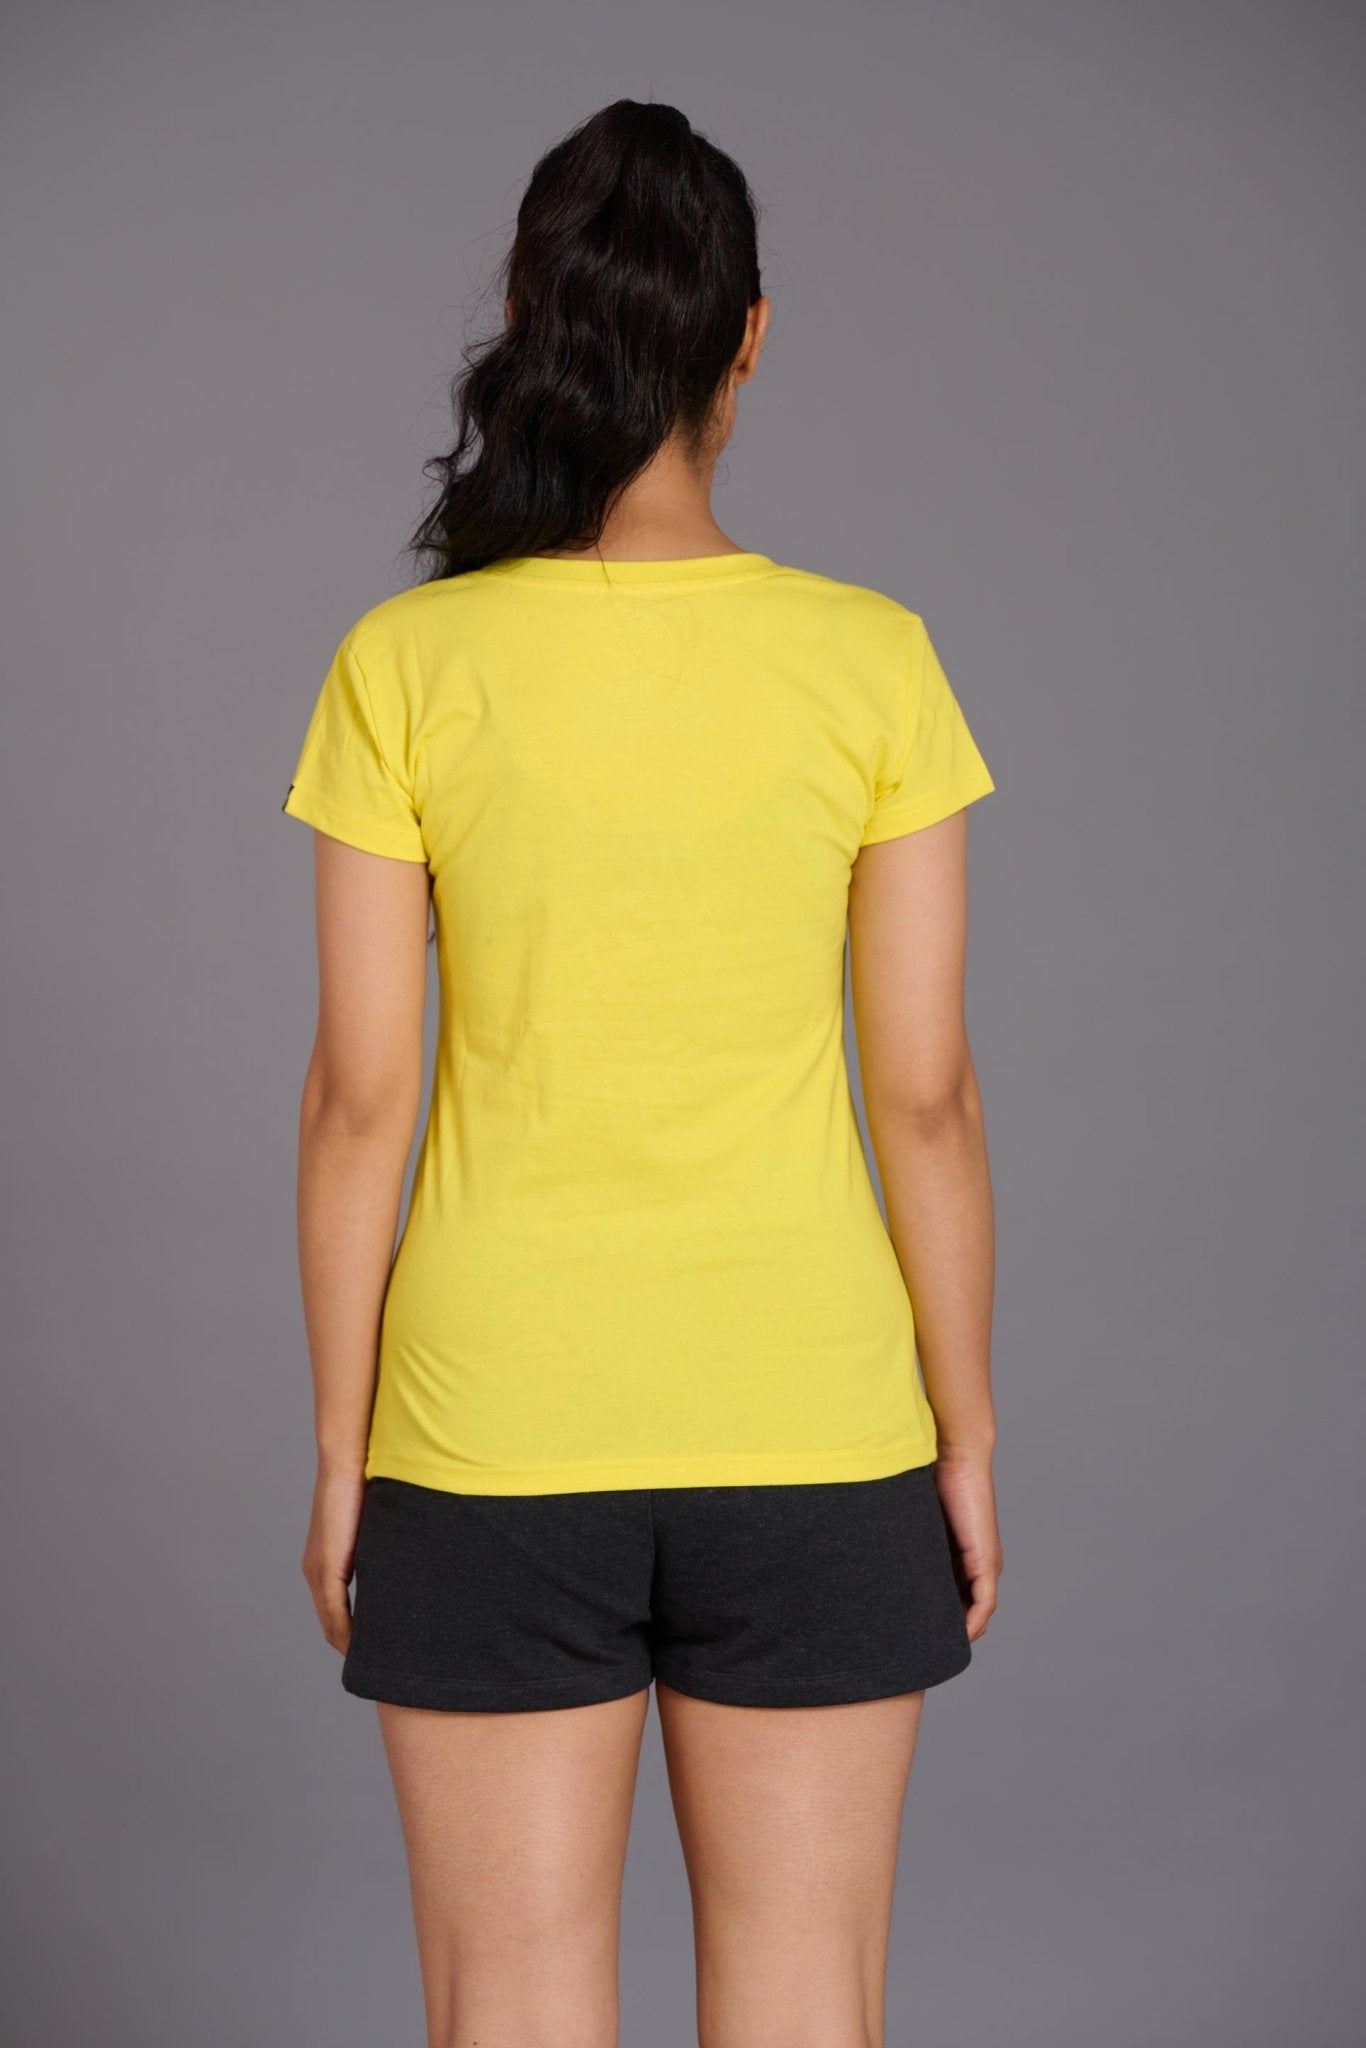 Vampire Never Sleep Printed Yellow Oversized T-Shirt for Women - Go Devil